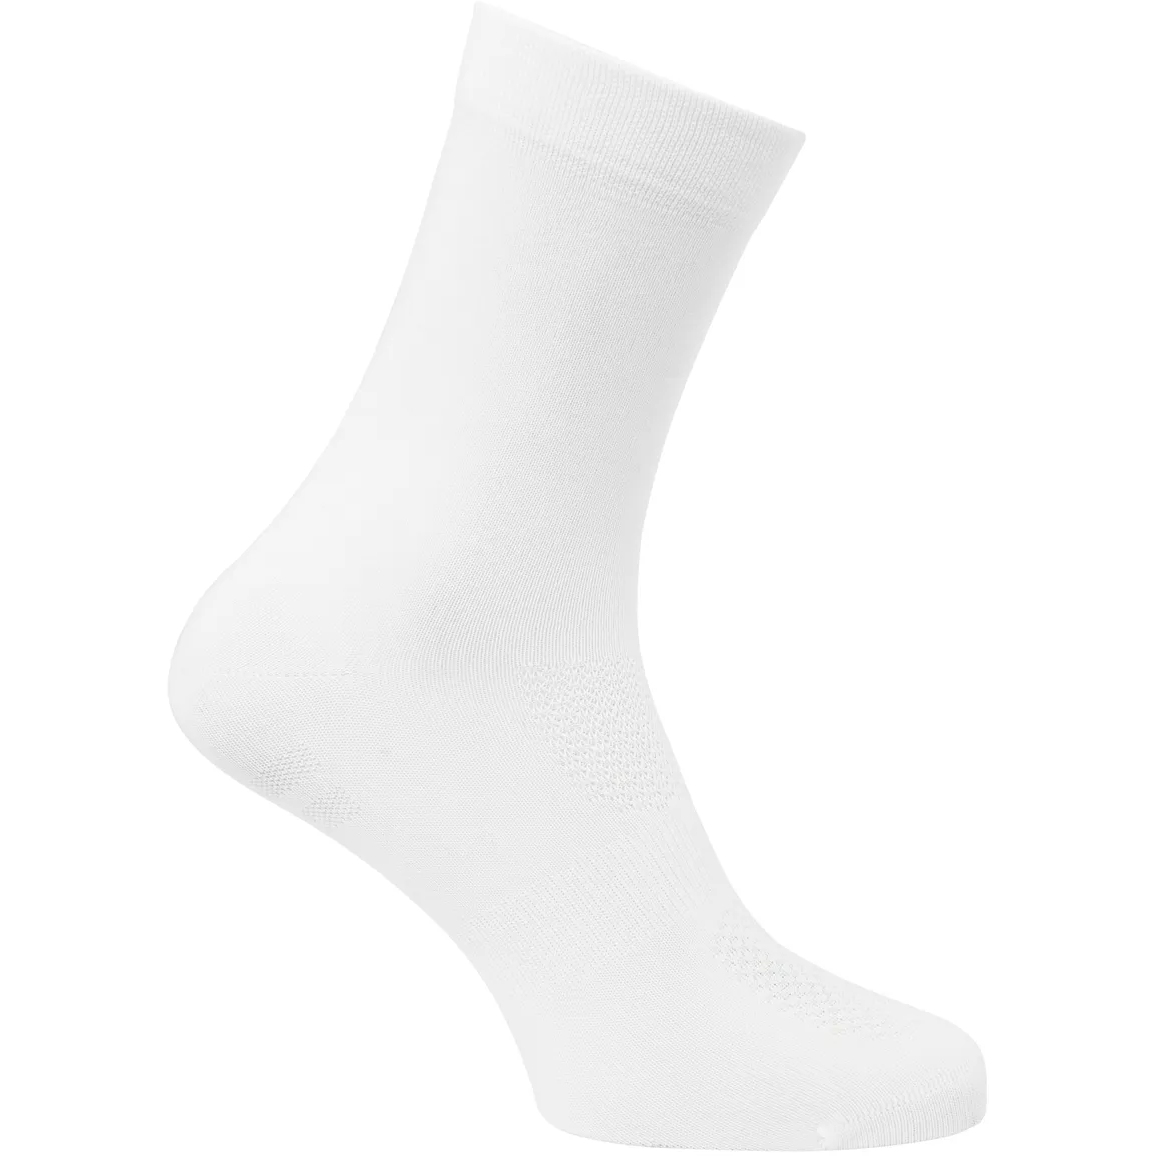 Produktbild von AGU Essential High Socken - 2er Pack - weiß